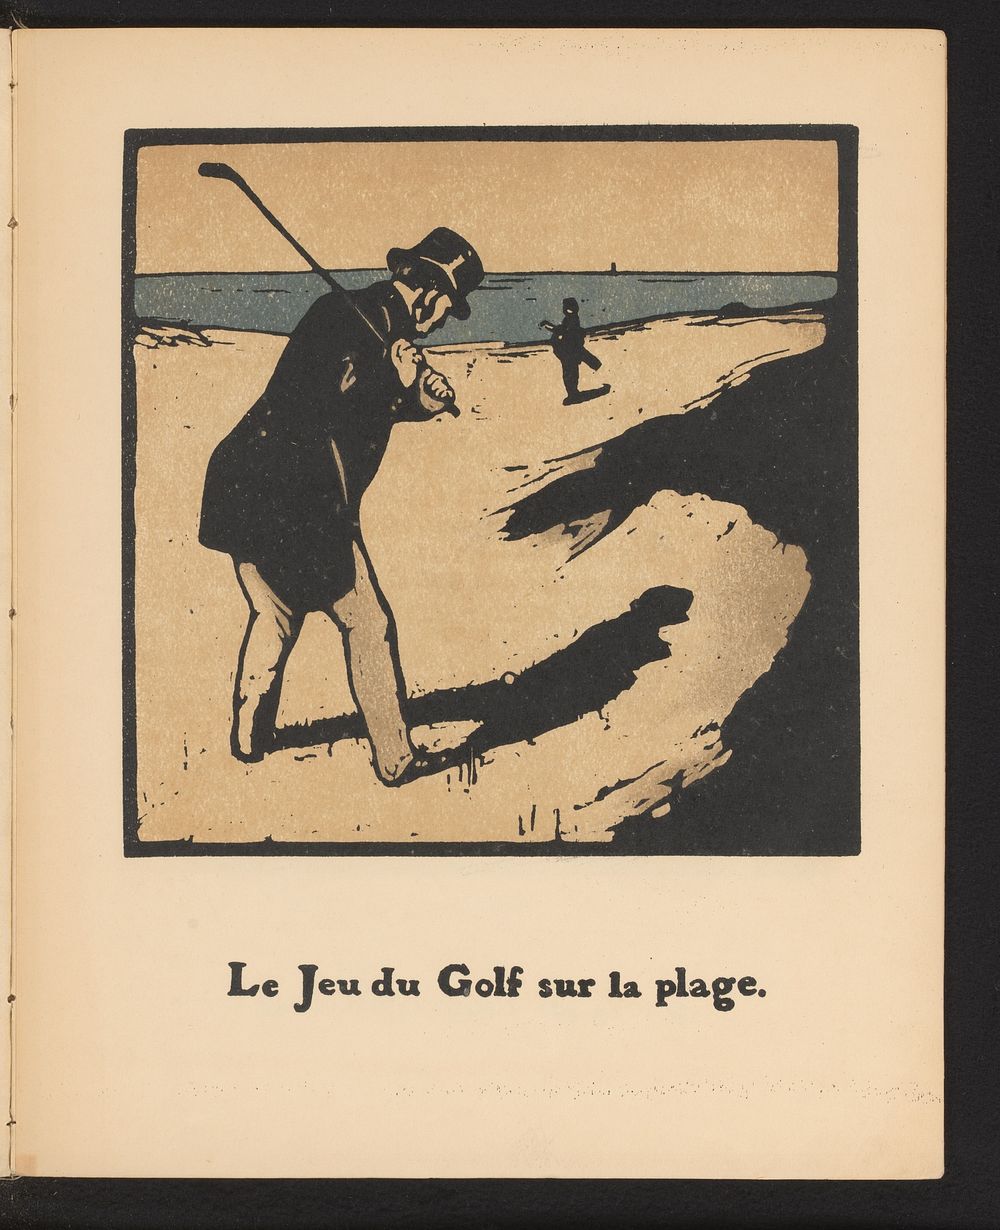 Golfers (1898) by William Nicholson and Société Française d éditions d art